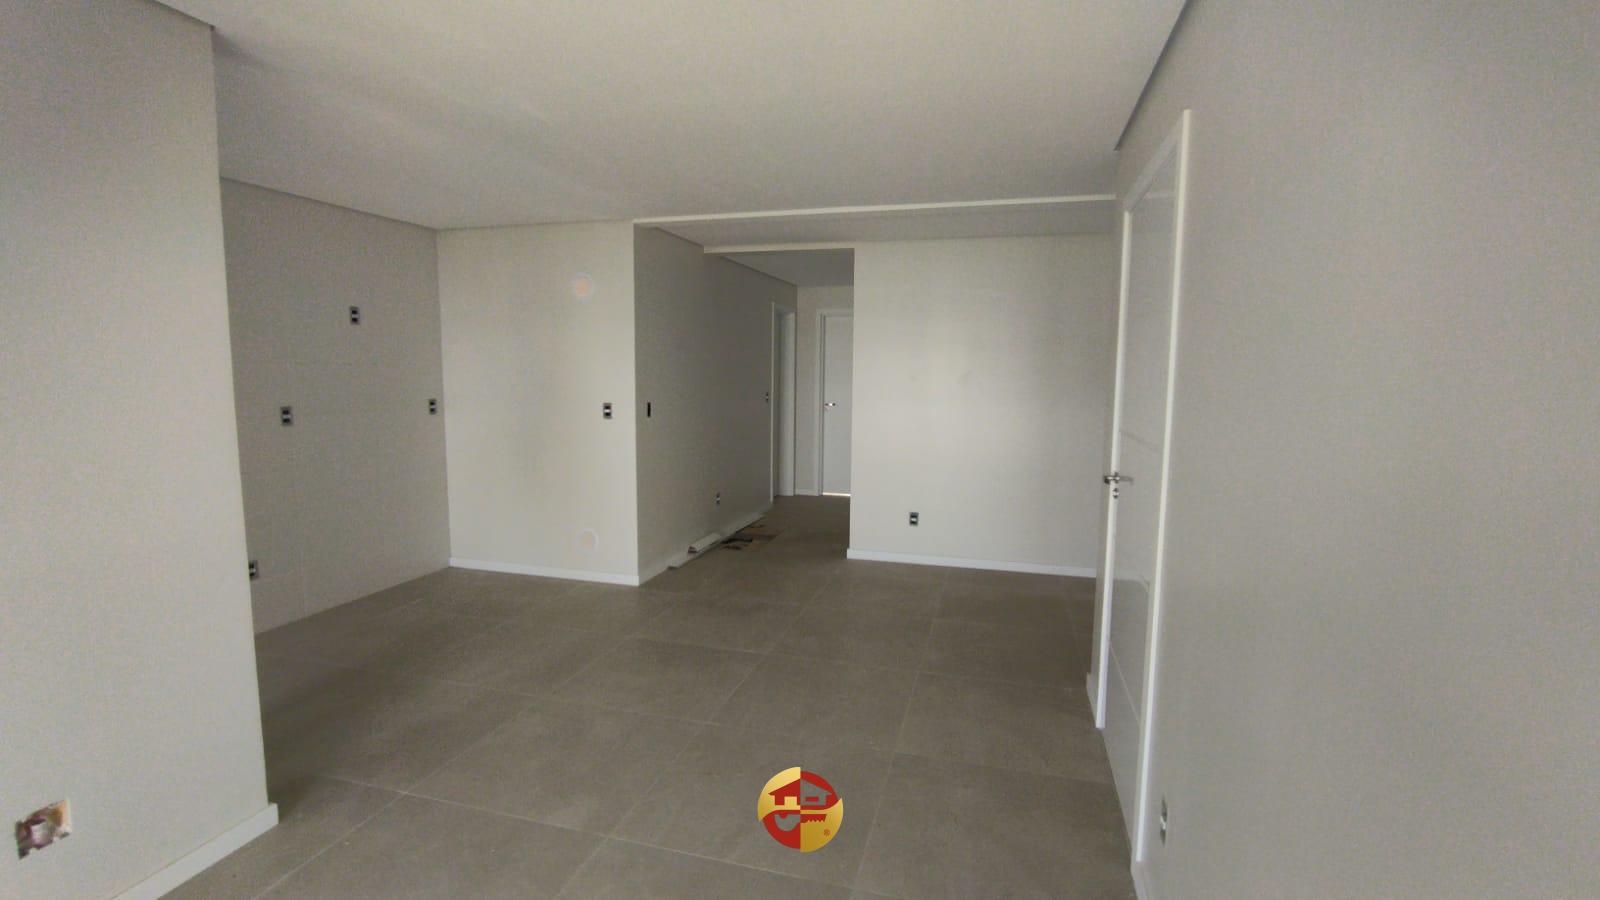 Apartamento com sacada nos quartos por menos de 350 mil reais ...